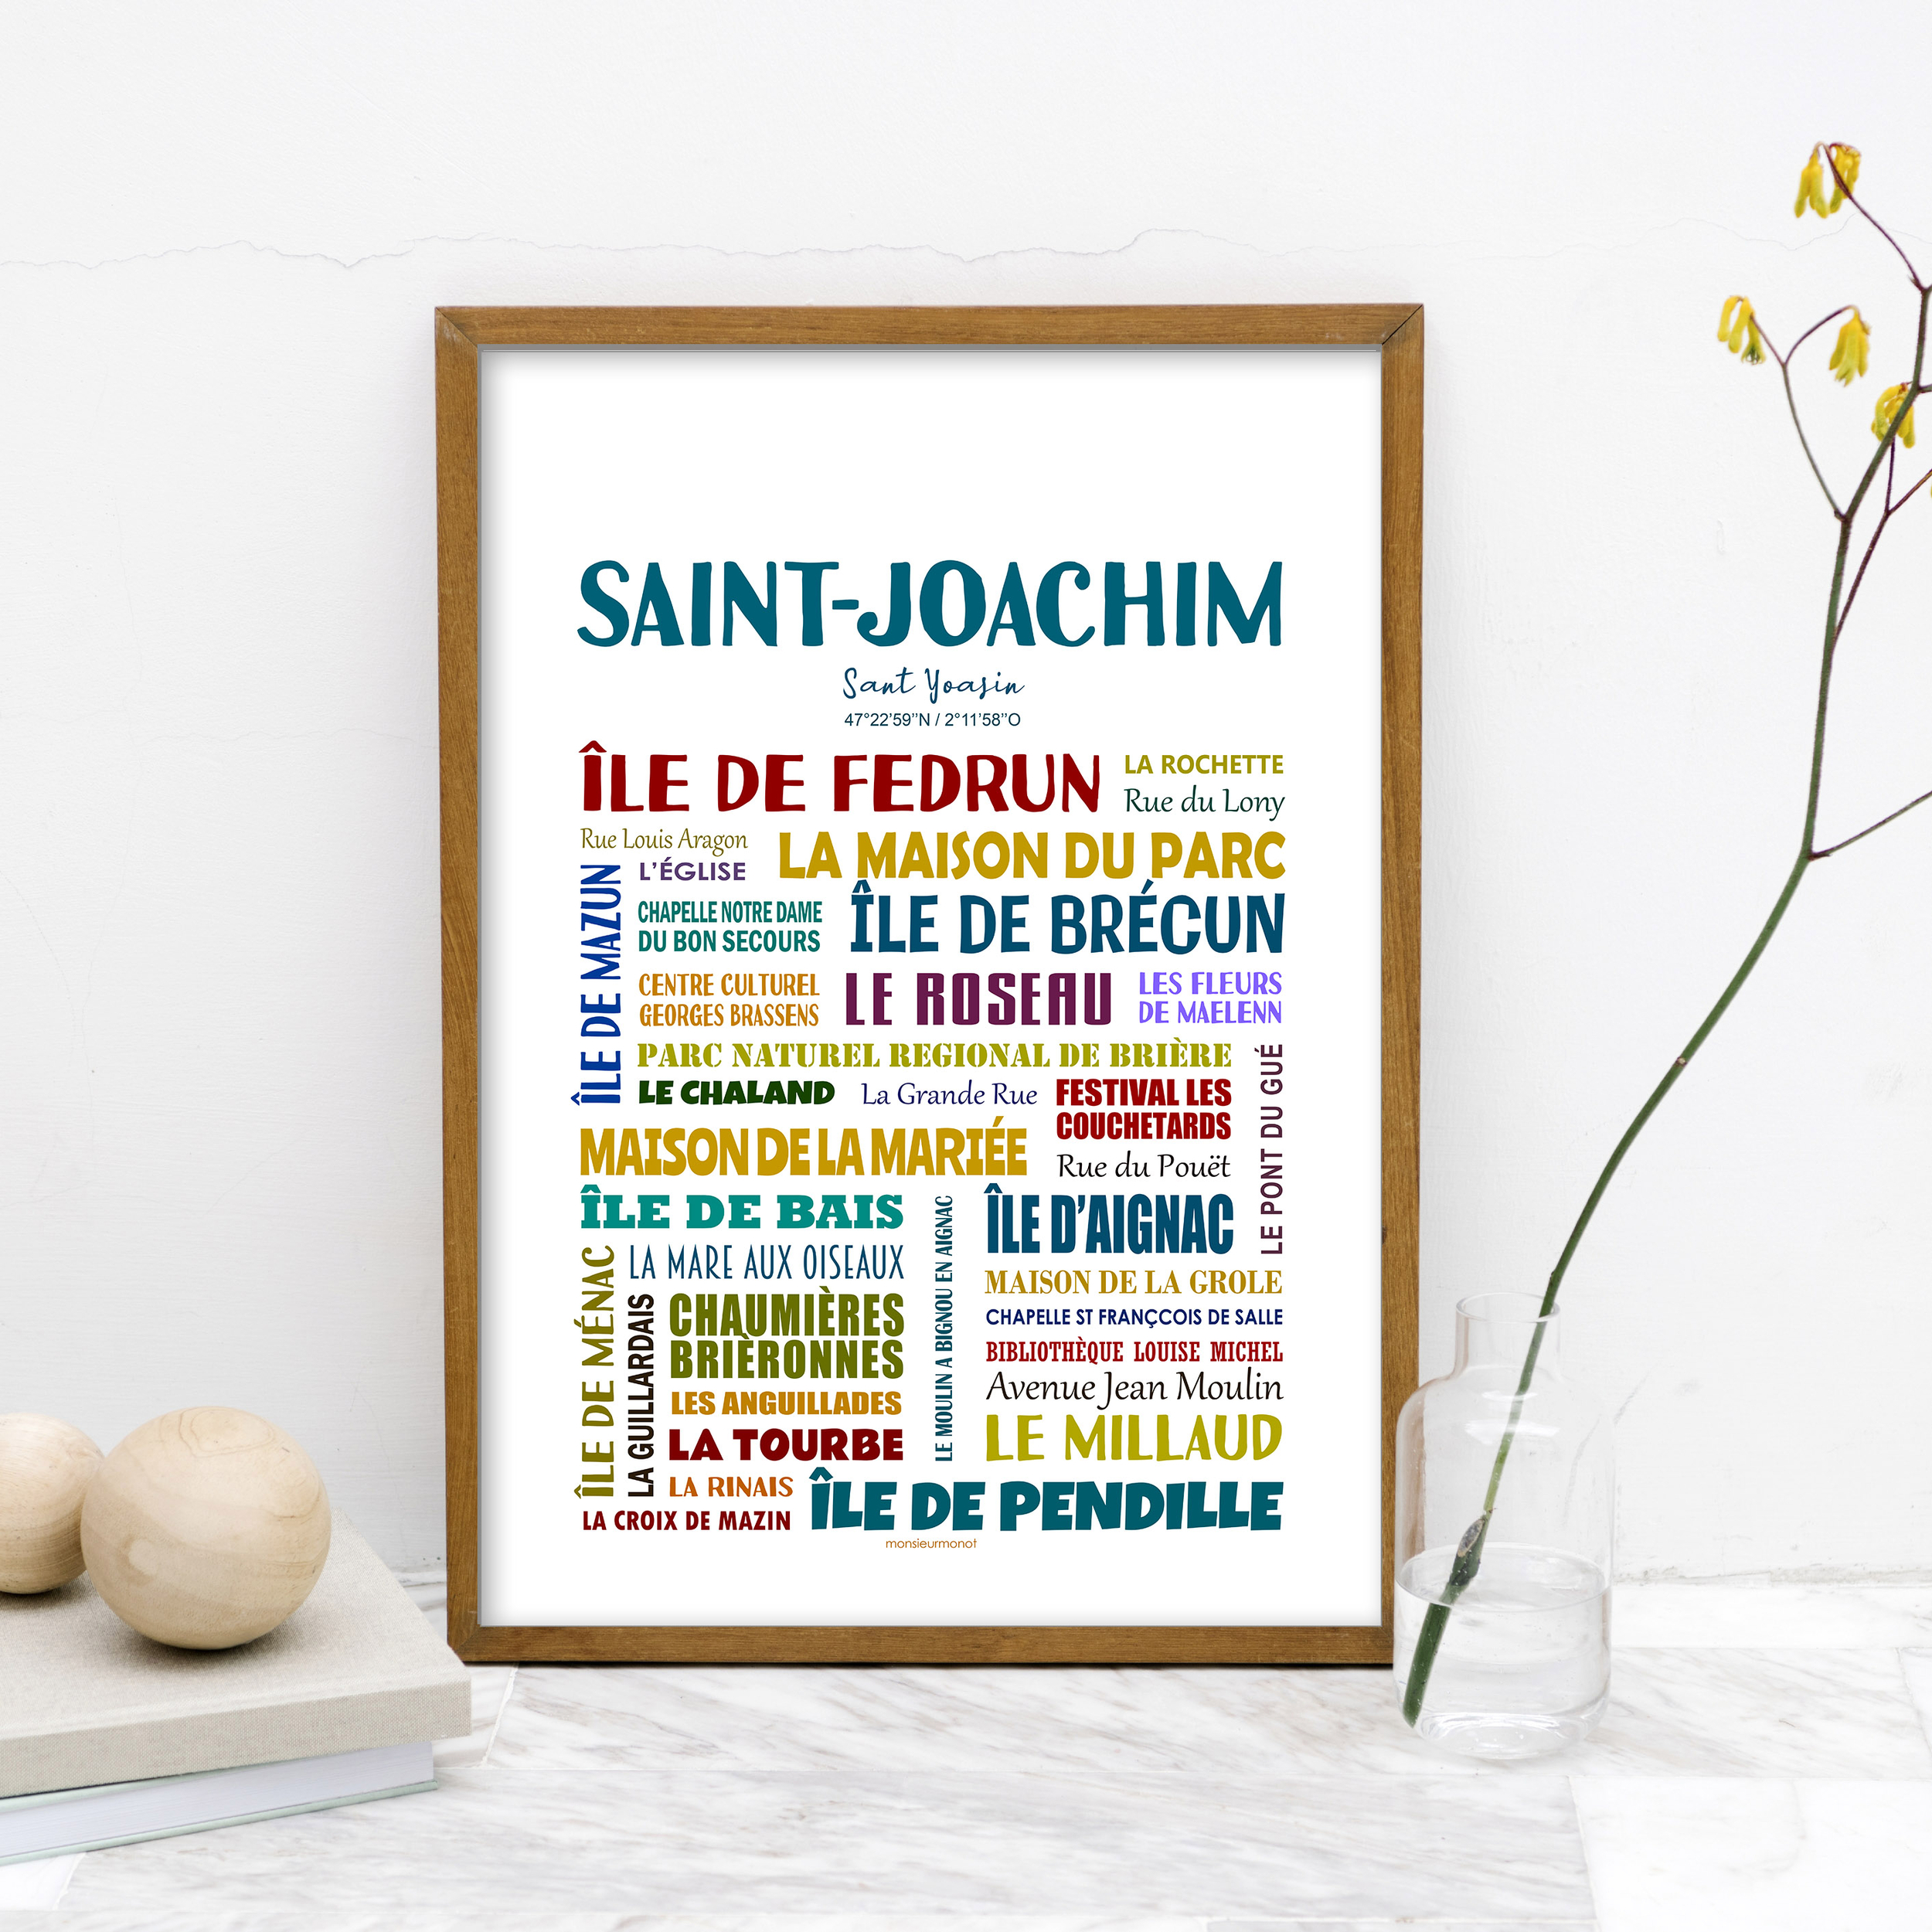 Saint-Joachim